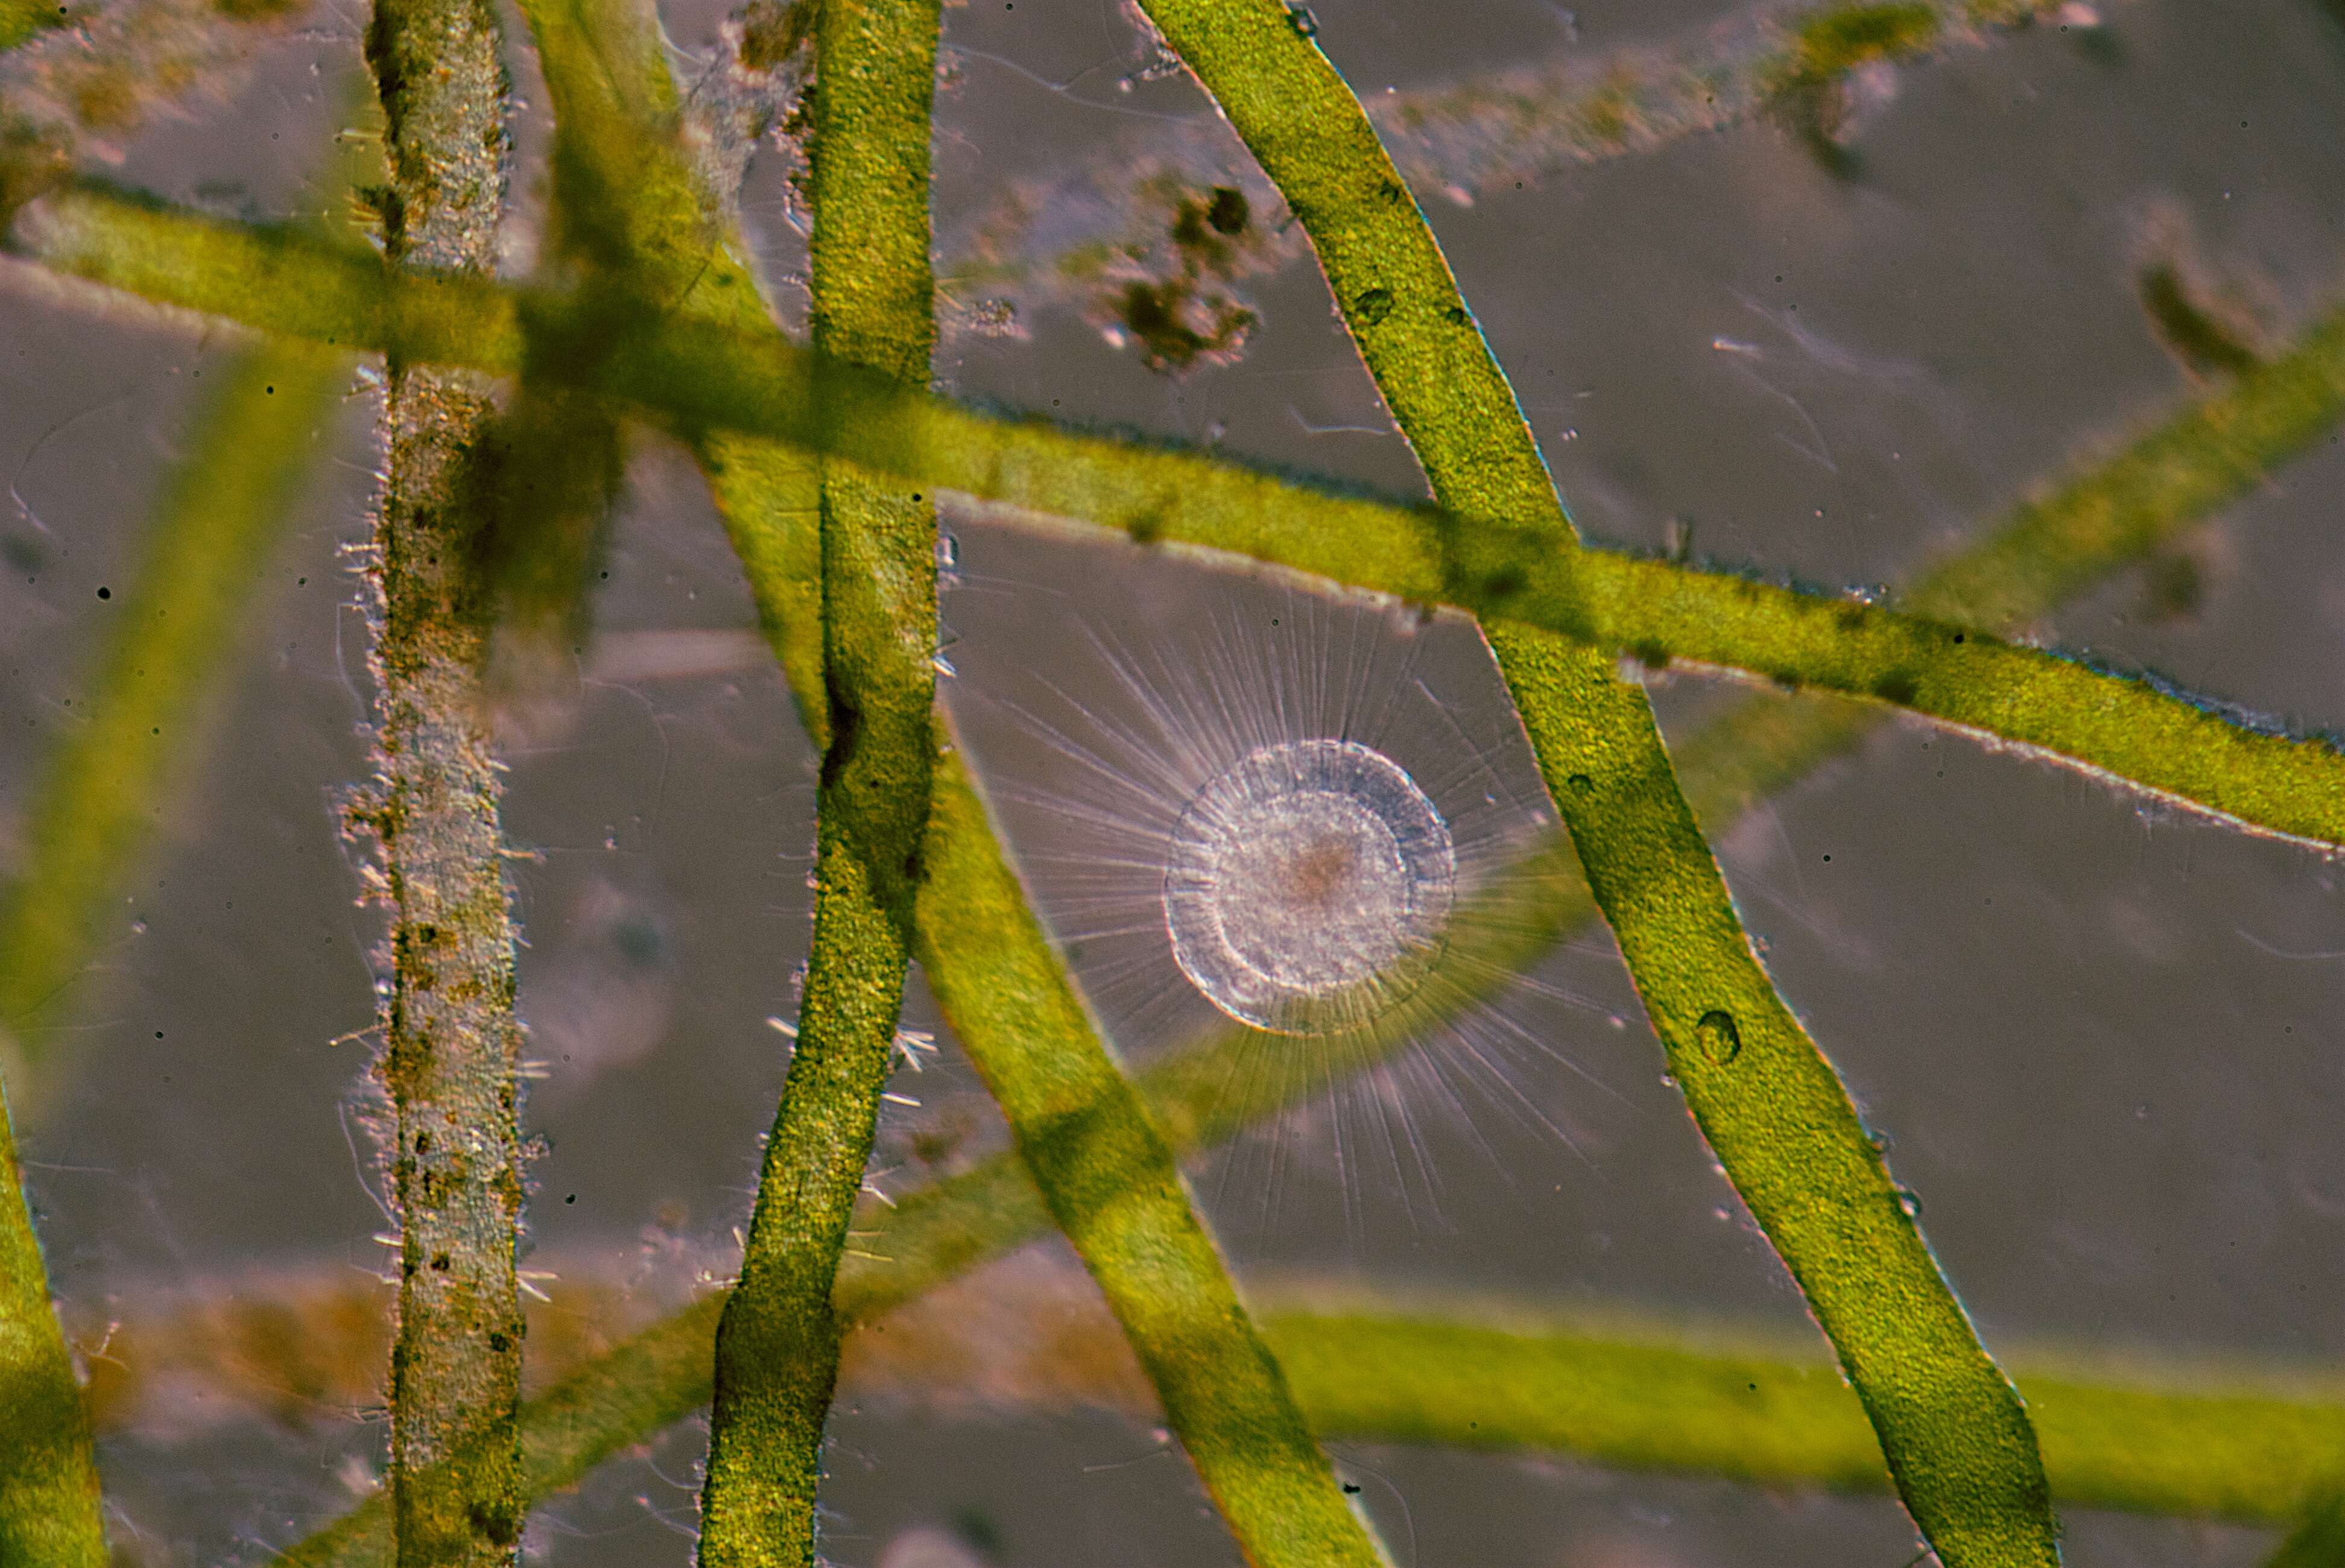 Image of Heliozoa